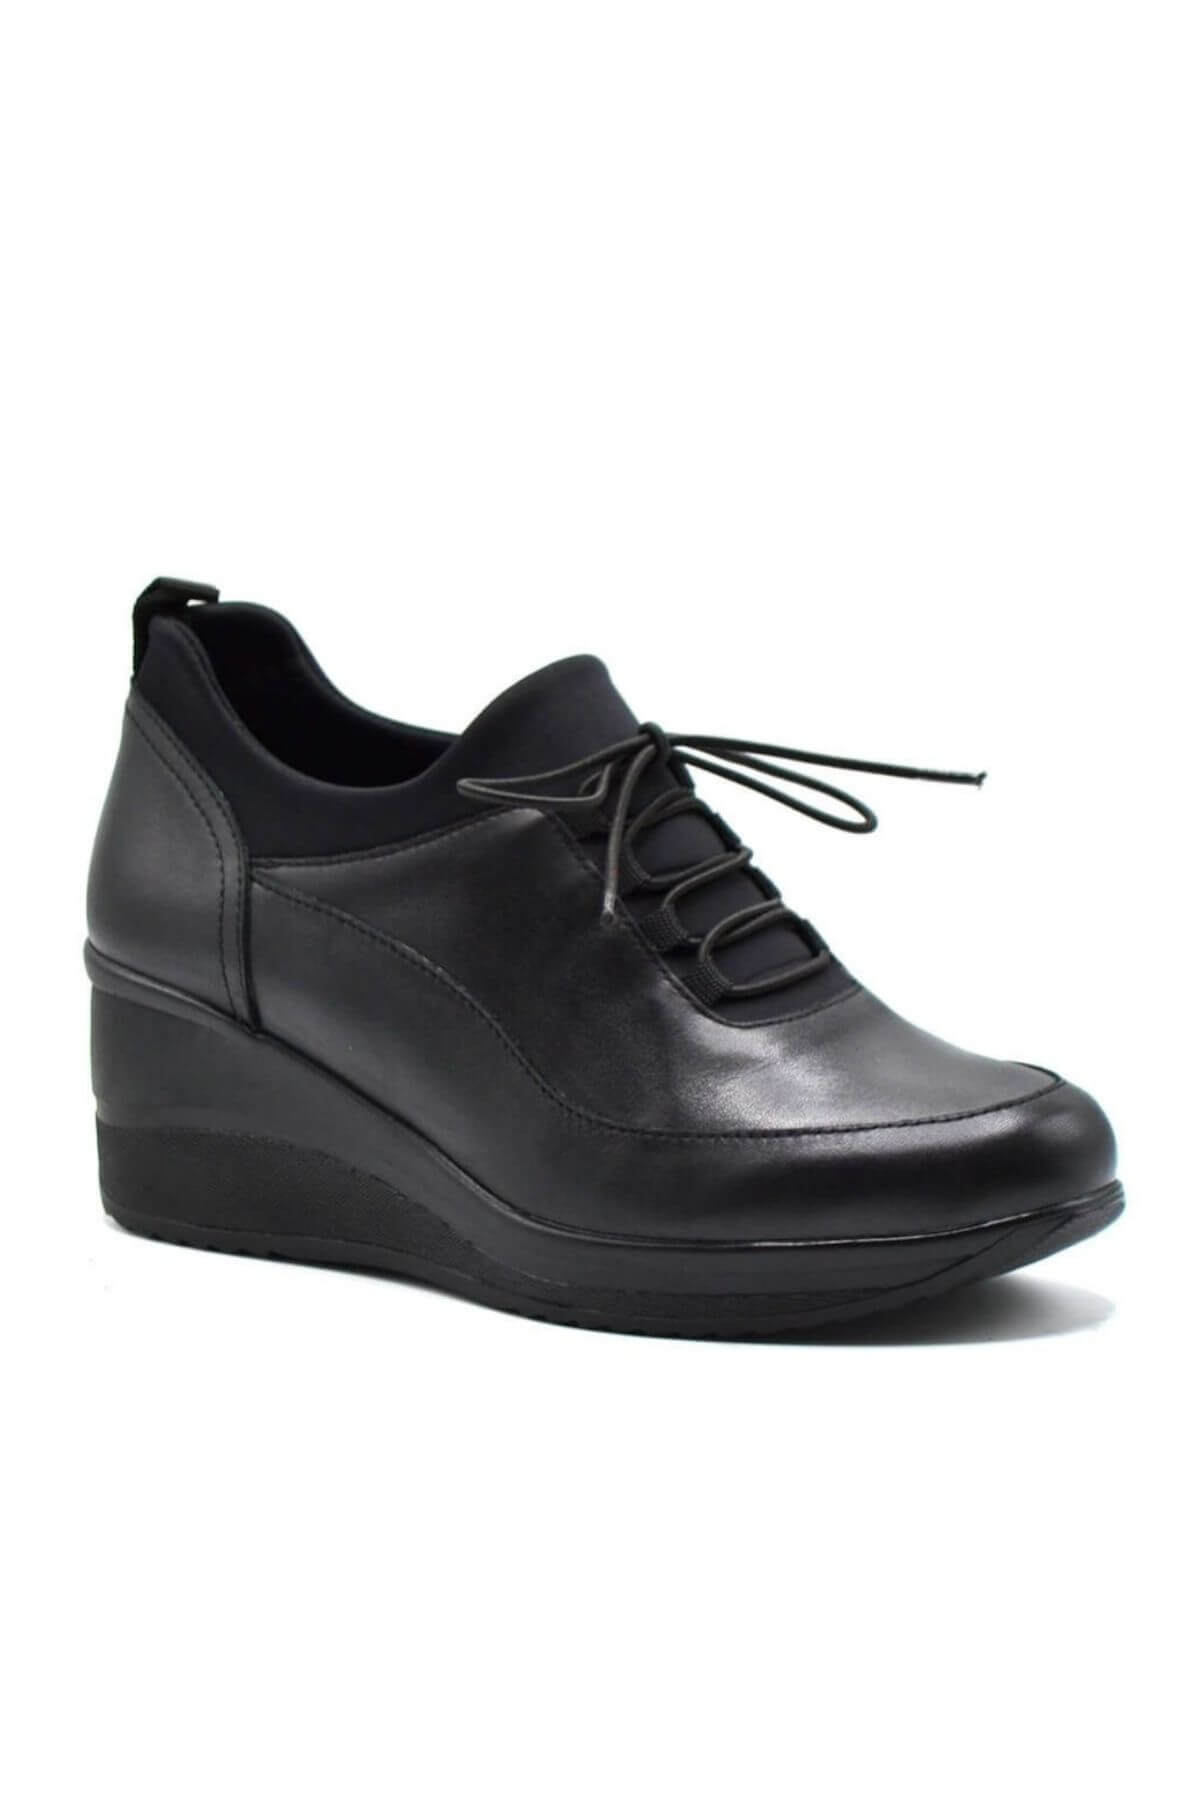 Kadın Dolgu Topuk Düz Deri Ayakkabı Siyah 2111510K